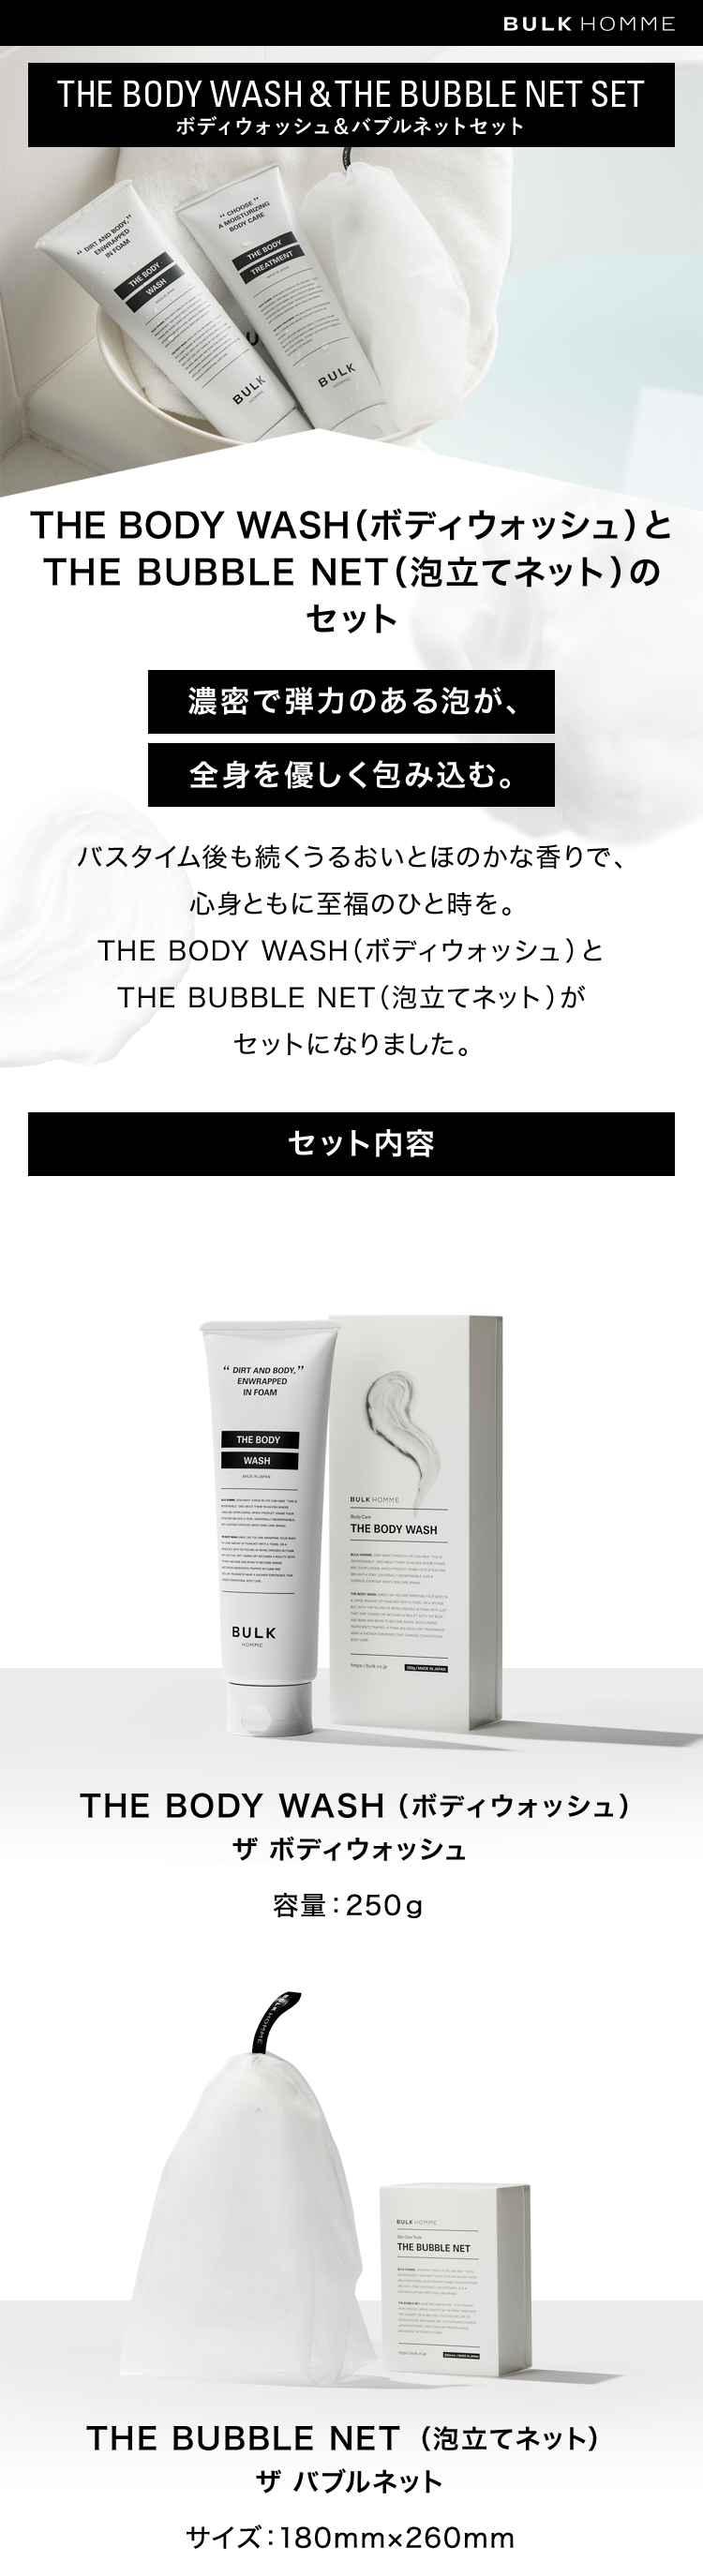 1023円 【58%OFF!】 バルクオム THE BODY WASH BUBBLE NET SET ボディウォッシュ 泡立てネット BULK HOMME